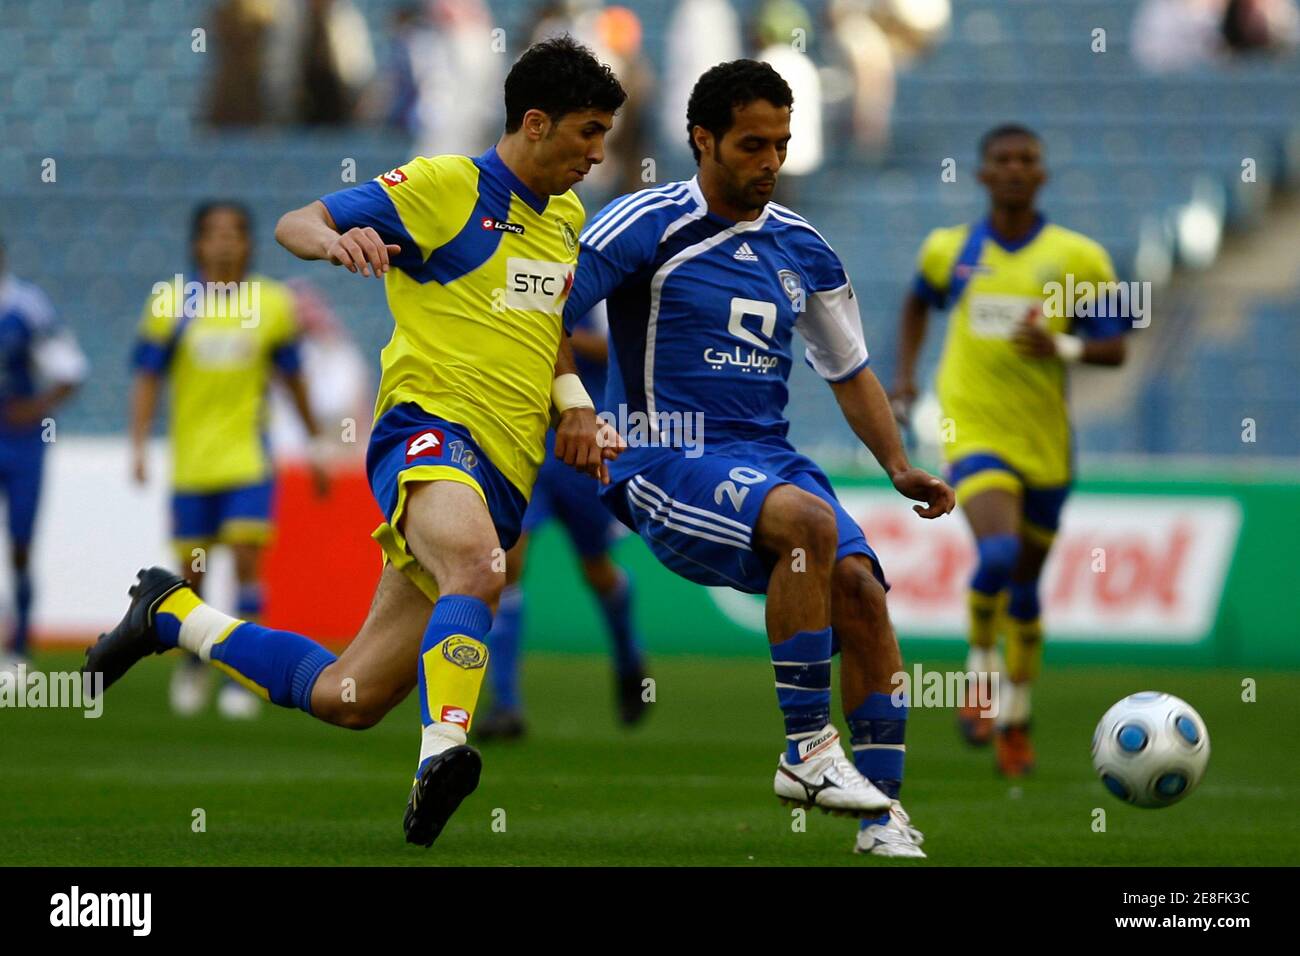 Al Hilal's Yasser al Qahtani (R) combatte per la palla con Abdullah al Qarni di al Nasr durante la loro partita di calcio Saudi Super League a Riyadh il 31 dicembre 2009. REUTERS/Fahad Shadeed (ARABIA SAUDITA - Tag: CALCIO SPORTIVO) Foto Stock